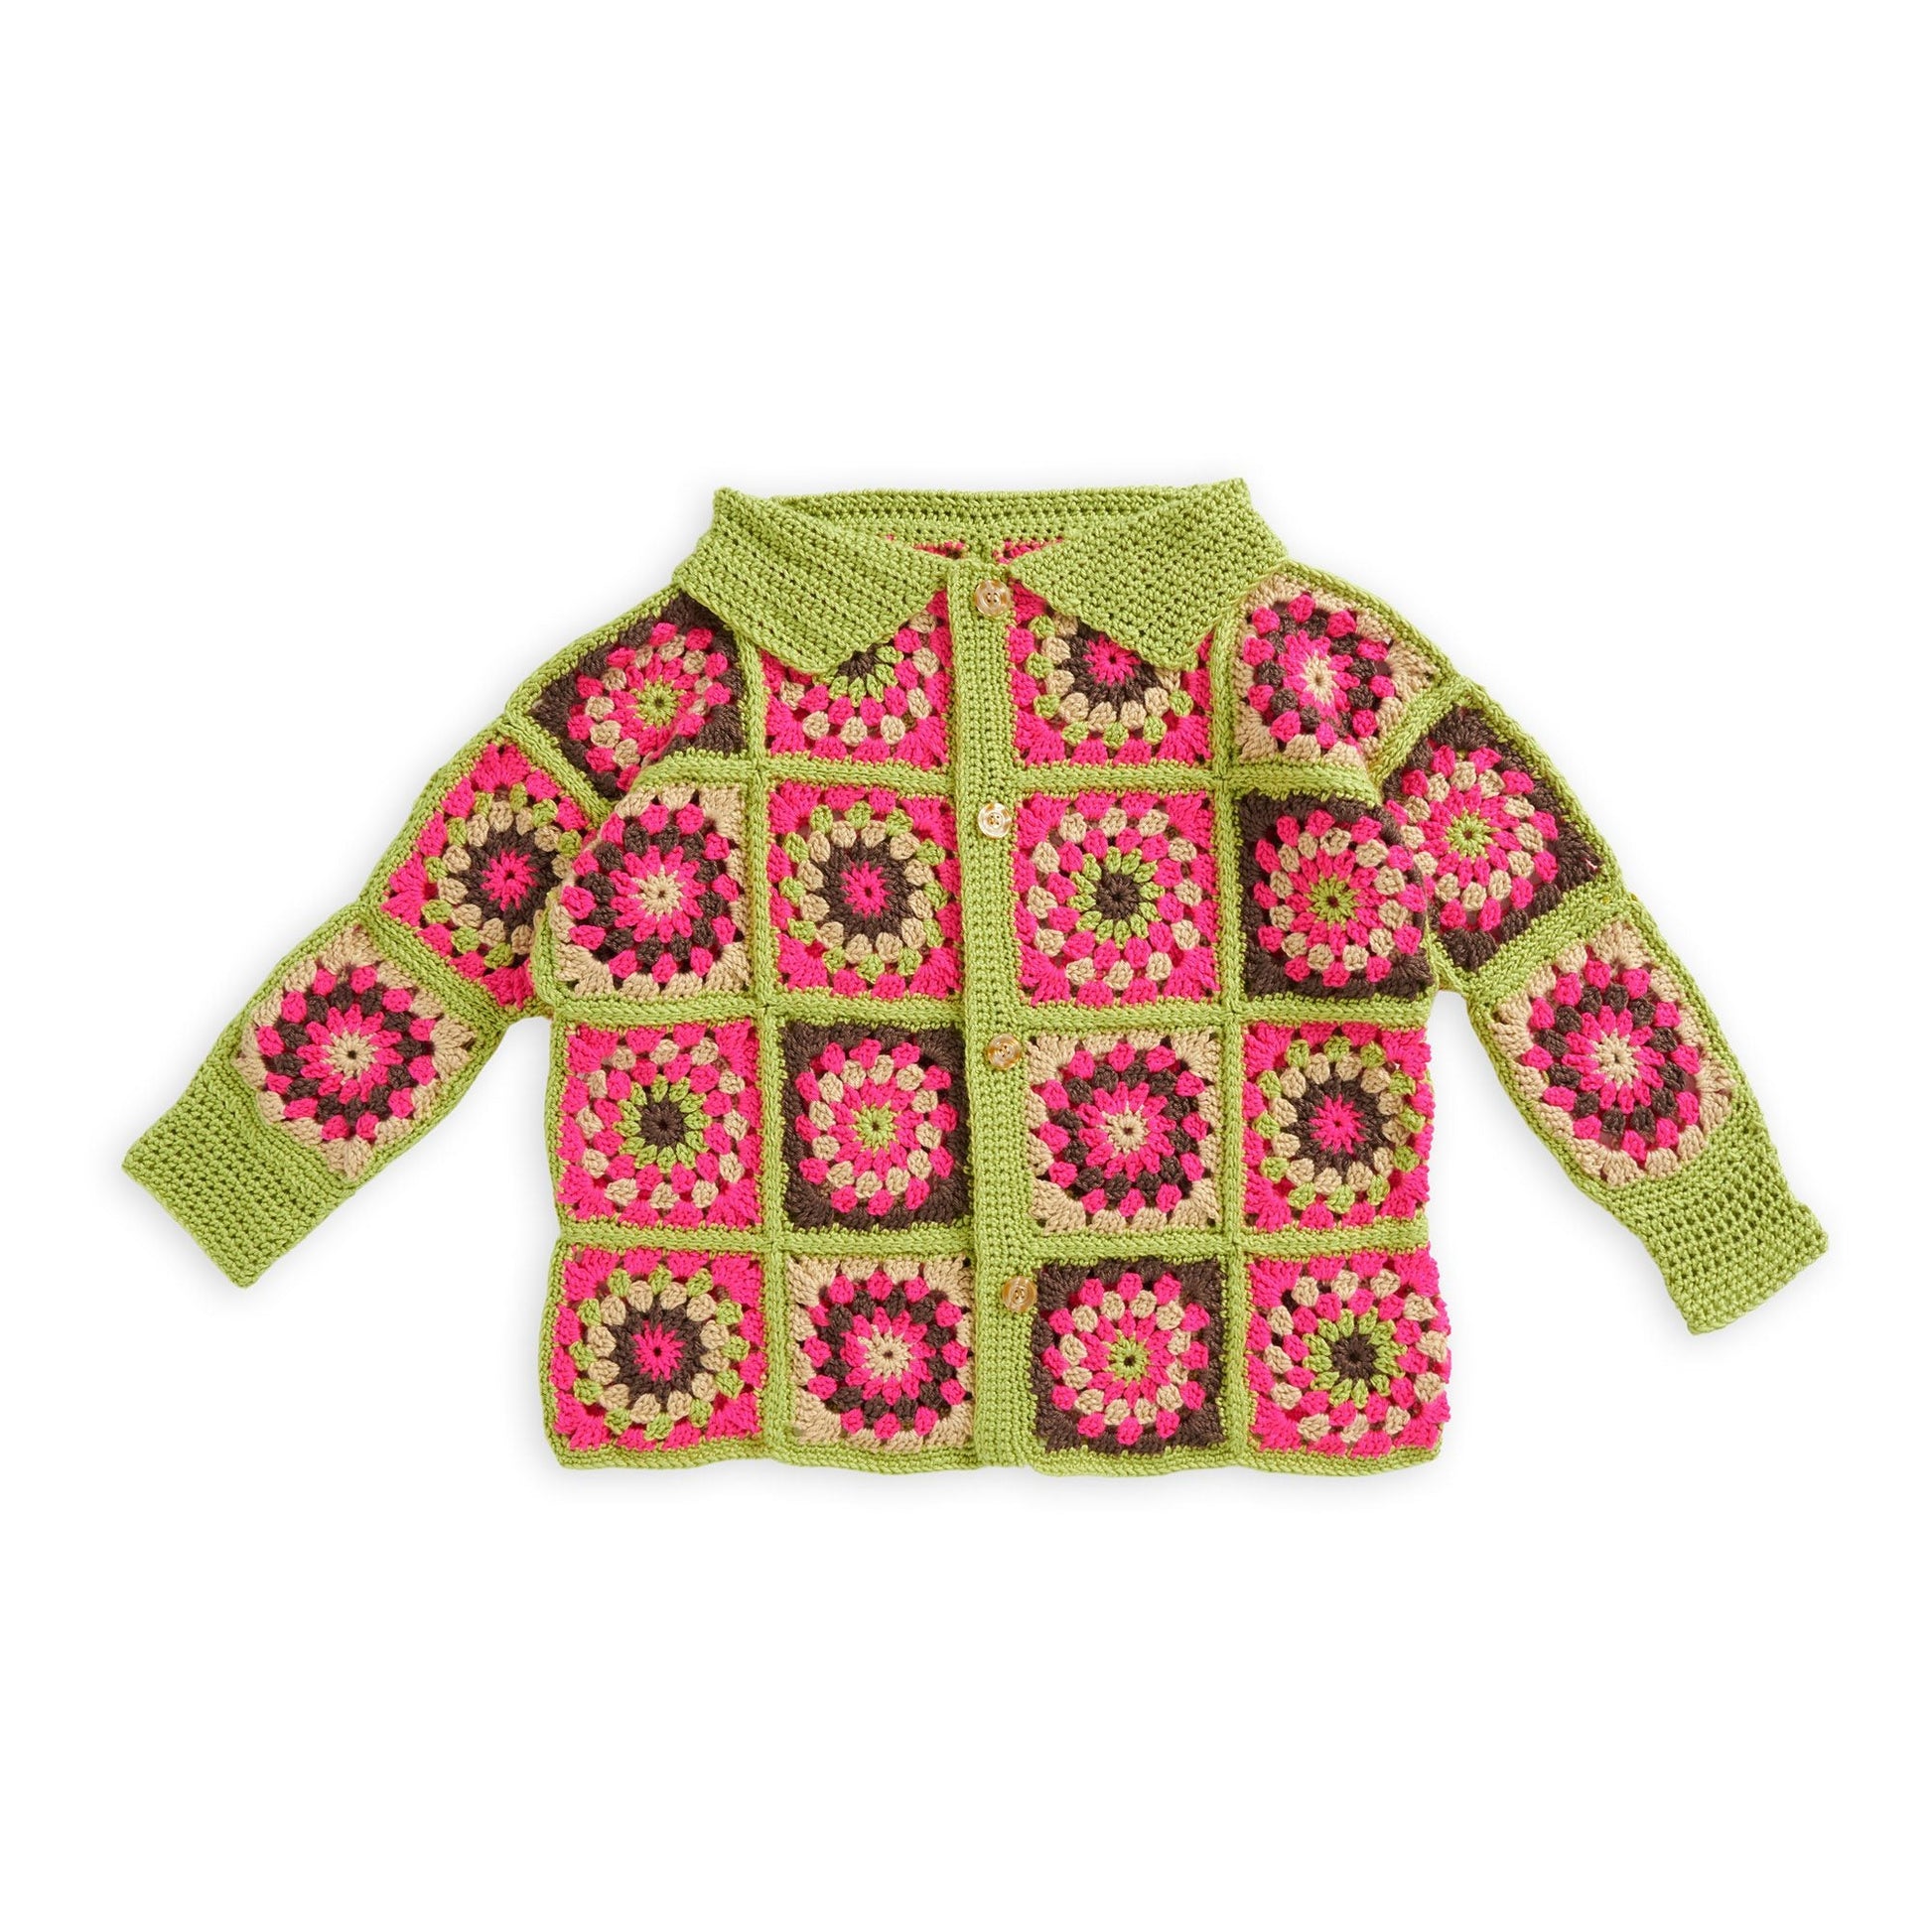 Caron Bright & Bold Crochet Granny Square Cardigan Caron Bright & Bold Crochet Granny Square Cardigan